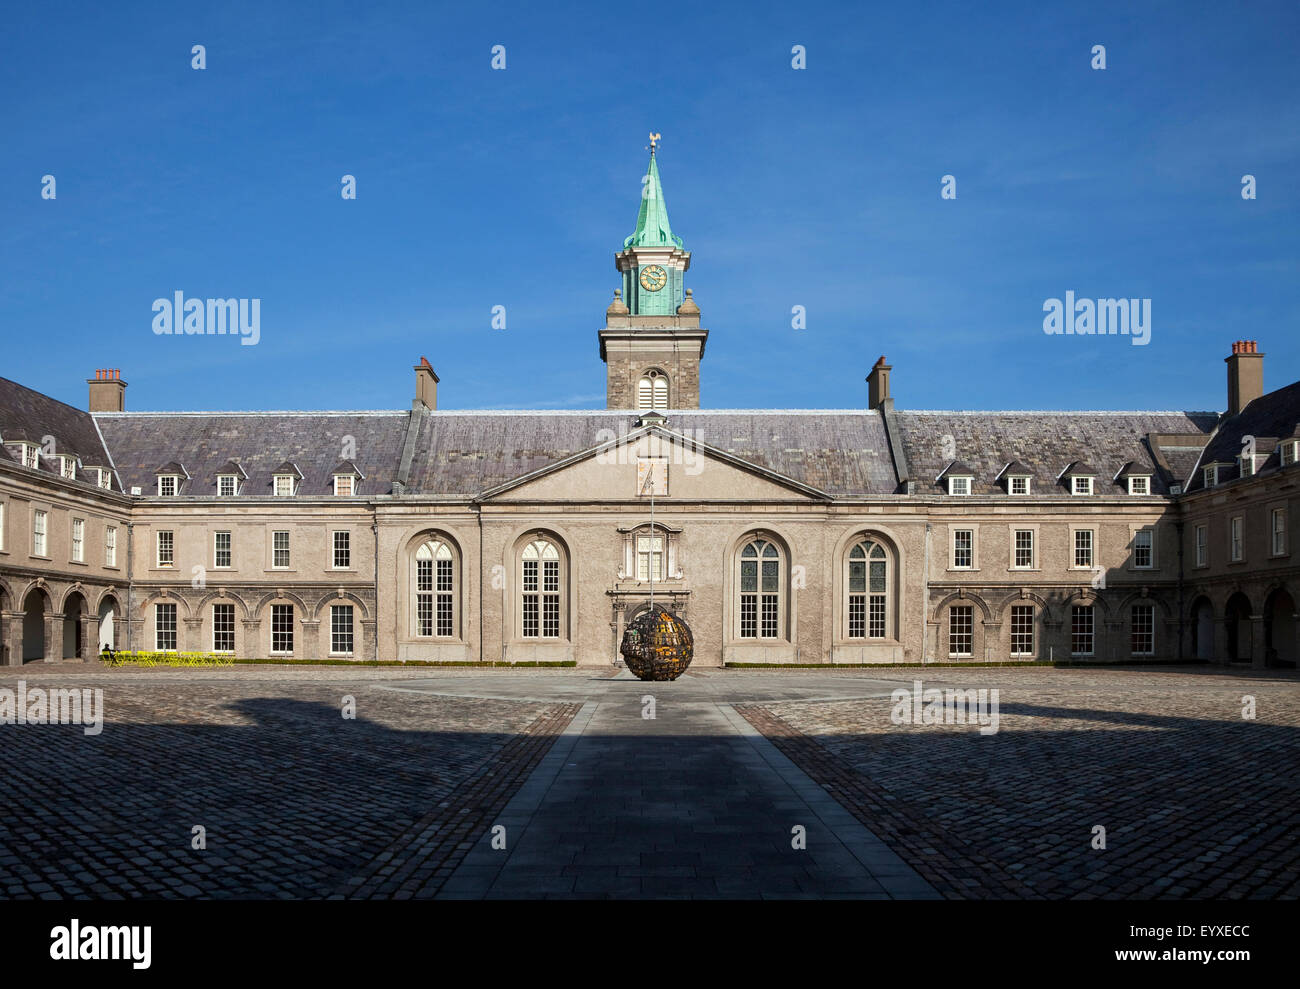 Le Royal Hospital Kilmainham, construit en 1684 par Sir William Robinson, maintenant le Musée d'Art moderne (IMMA), Kilmainham, Dublin, Irlande Banque D'Images